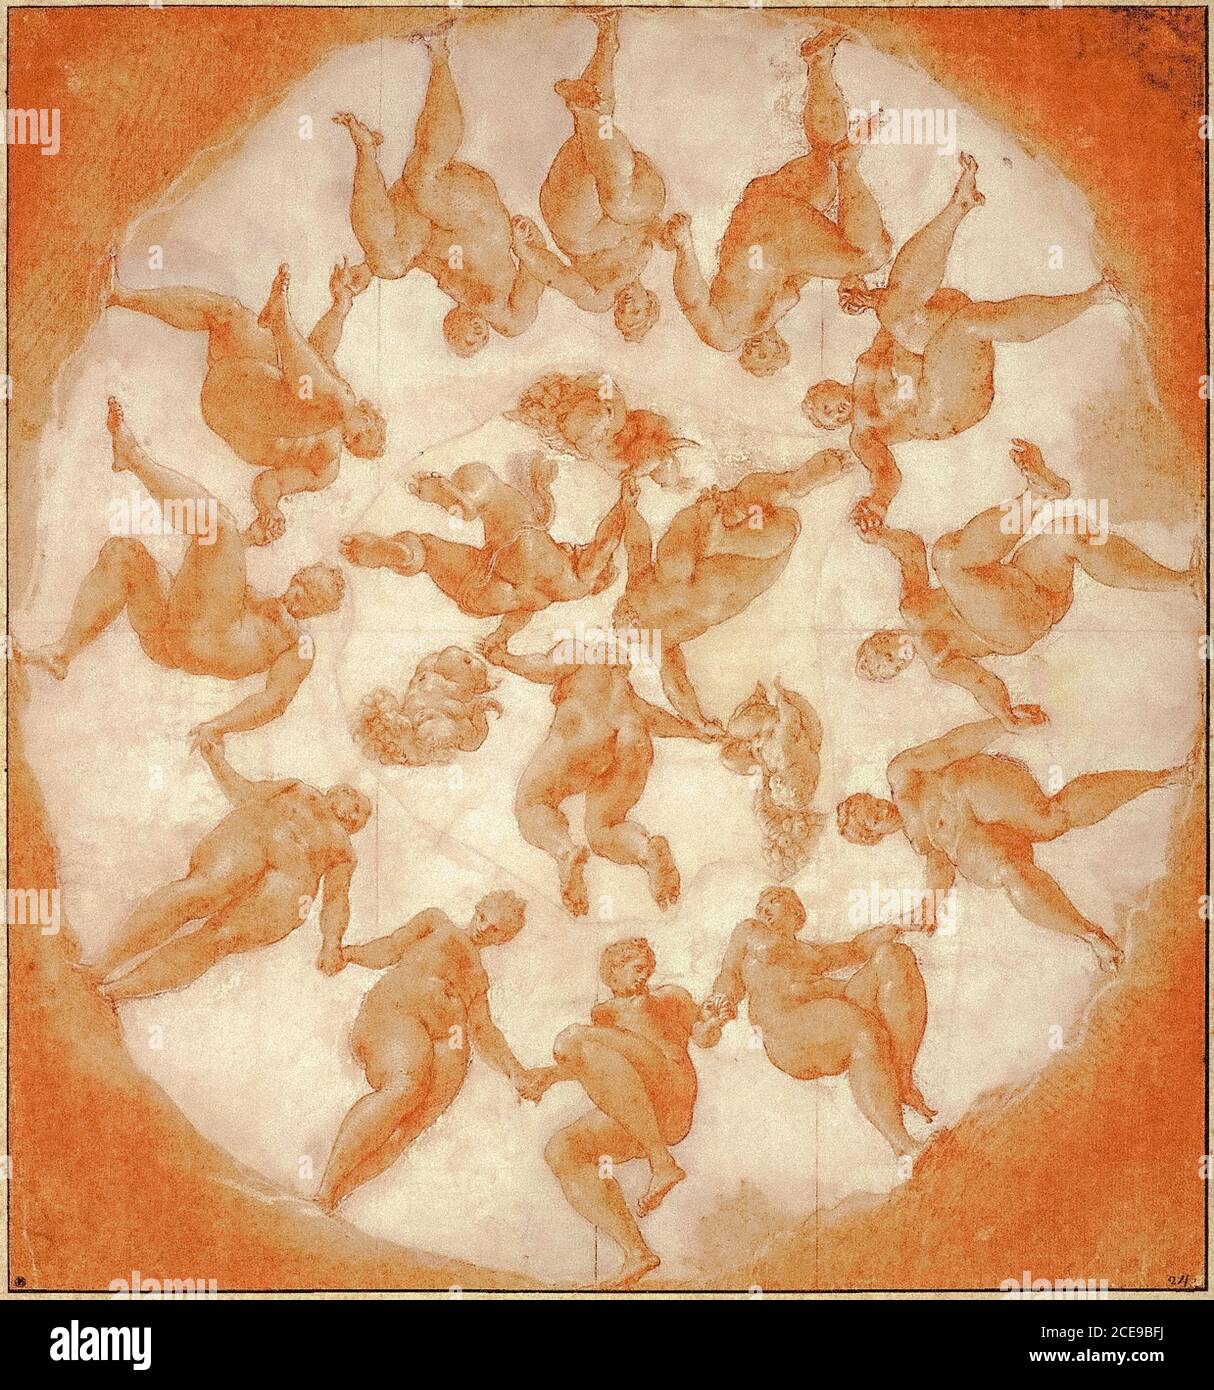 La danse des heures et des trois putti , cornucopiae. Cornucopia, Primaticcio Francesco (1504-1570) Banque D'Images